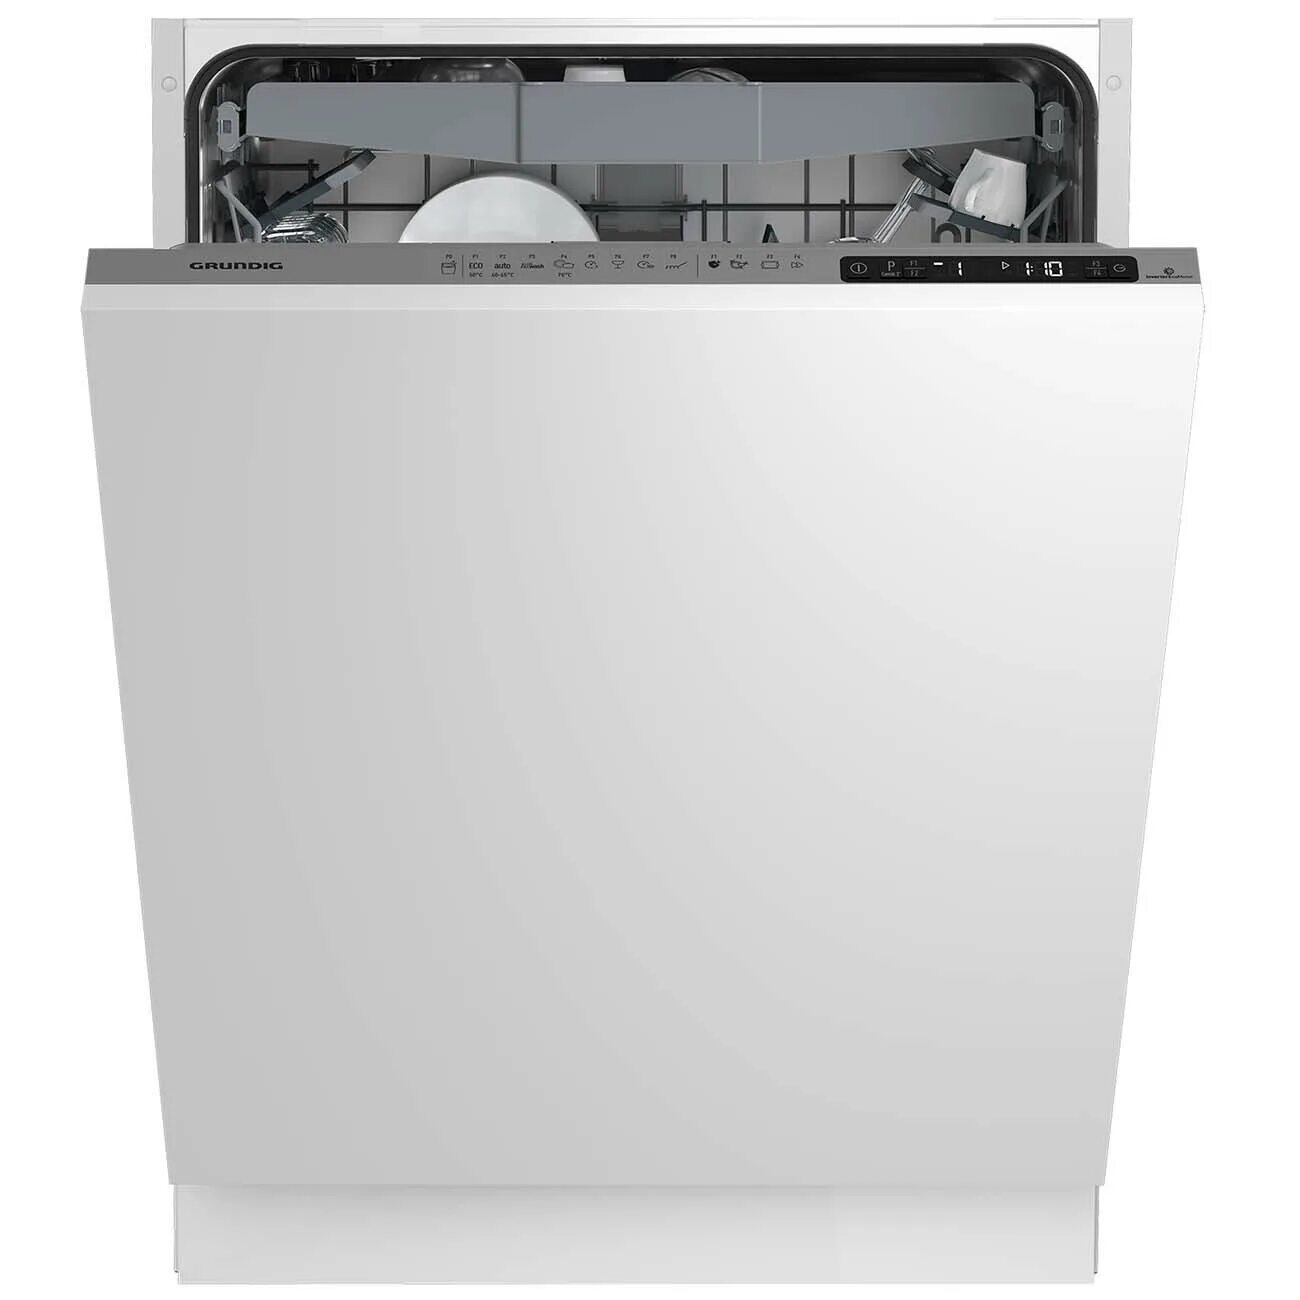 Встраиваемая посудомоечная машина Grundig GNVP 4551. Grundig 4551 посудомоечная машина. Встраиваемая посудомоечная машина Грюндик 60 см. Посудомоечная машина Grundig gnfp4551w. Встраиваемая посудомоечная машина 45 см купить спб